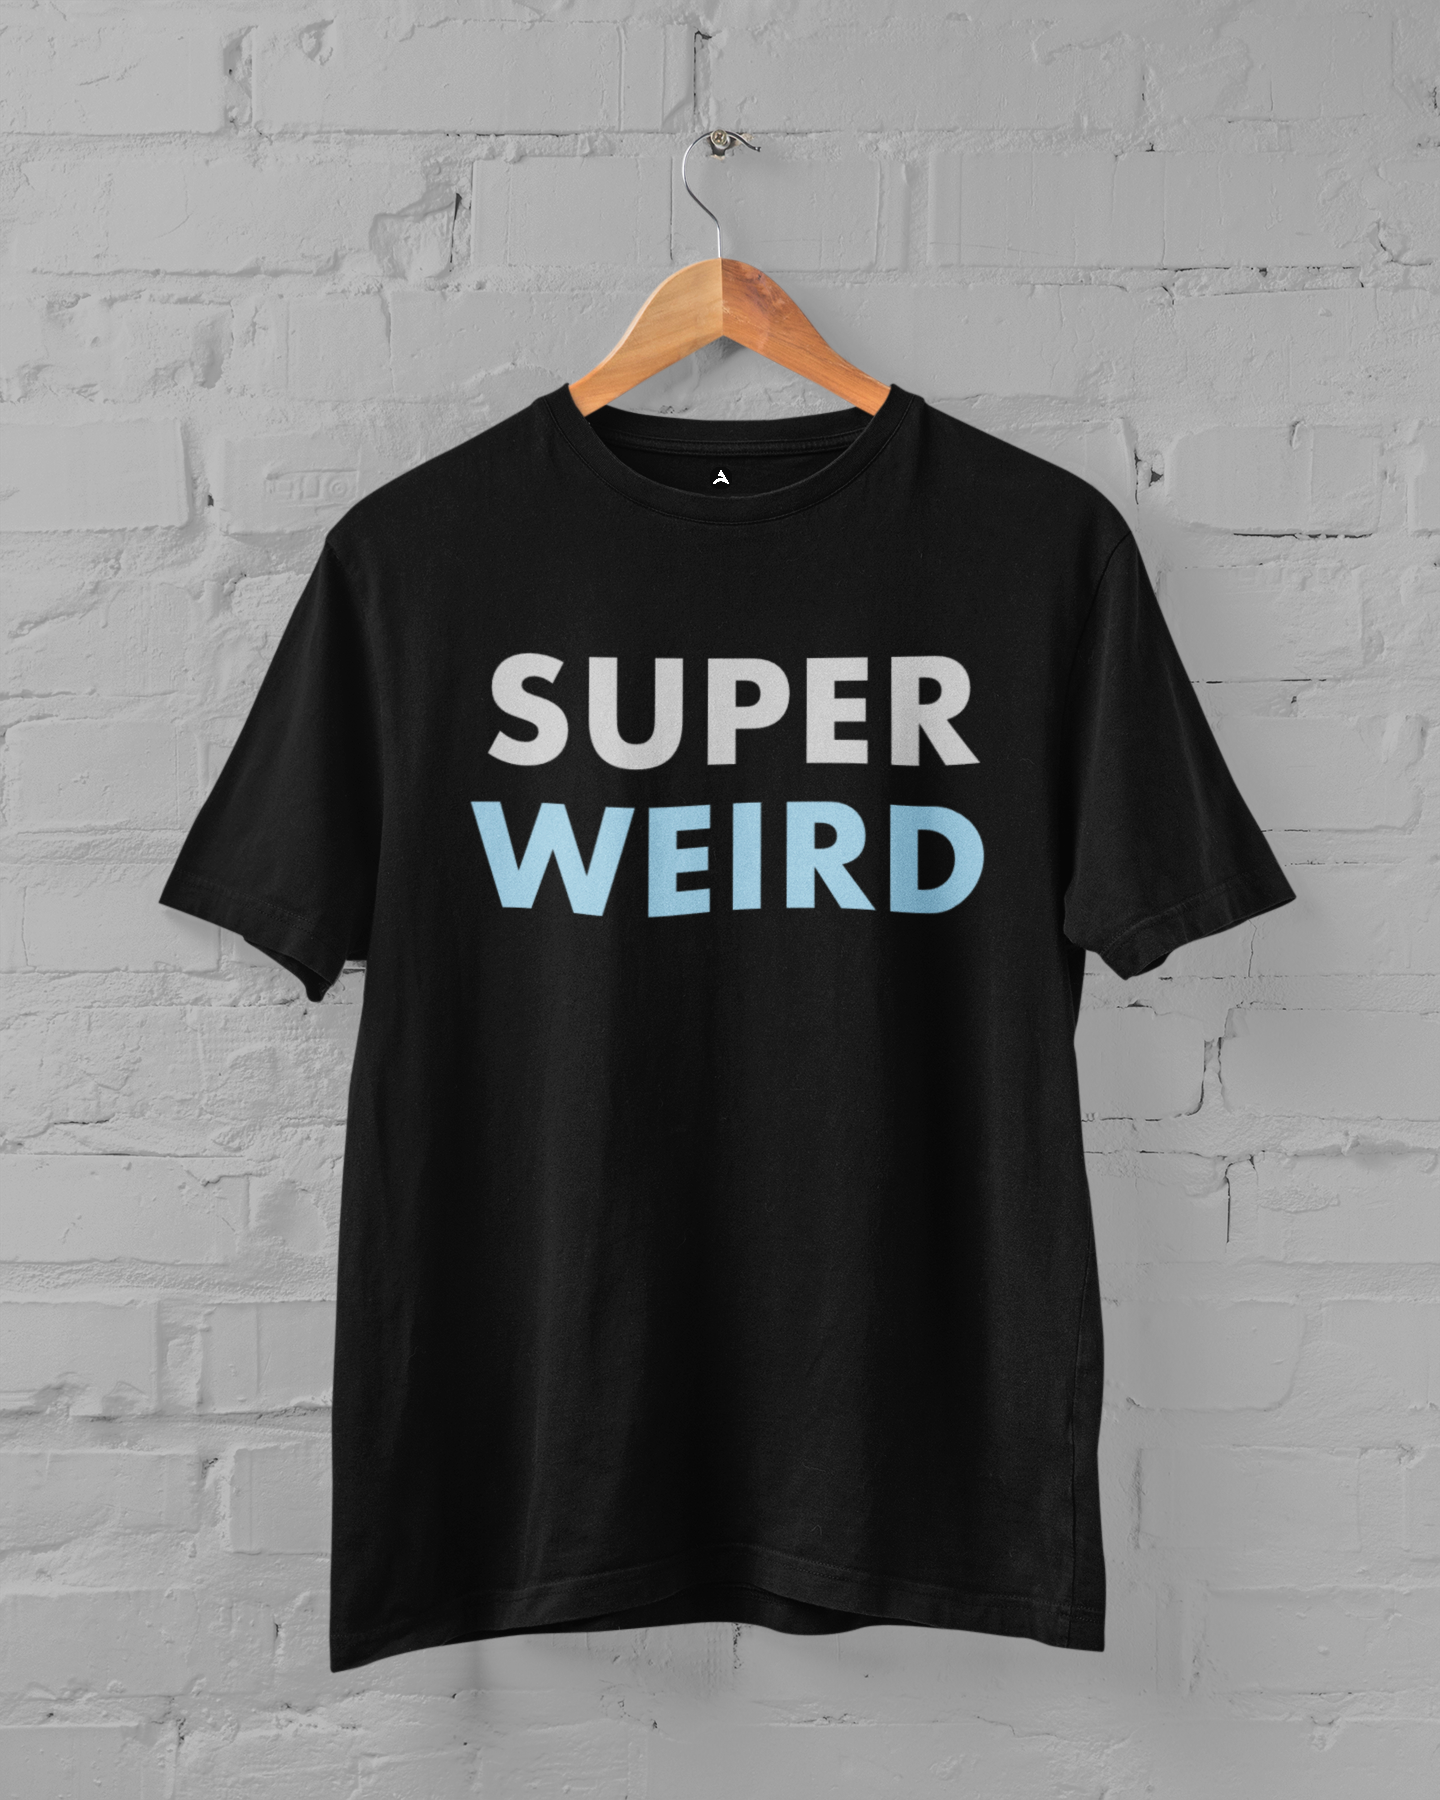 Super Weird: Oversized T-Shirts